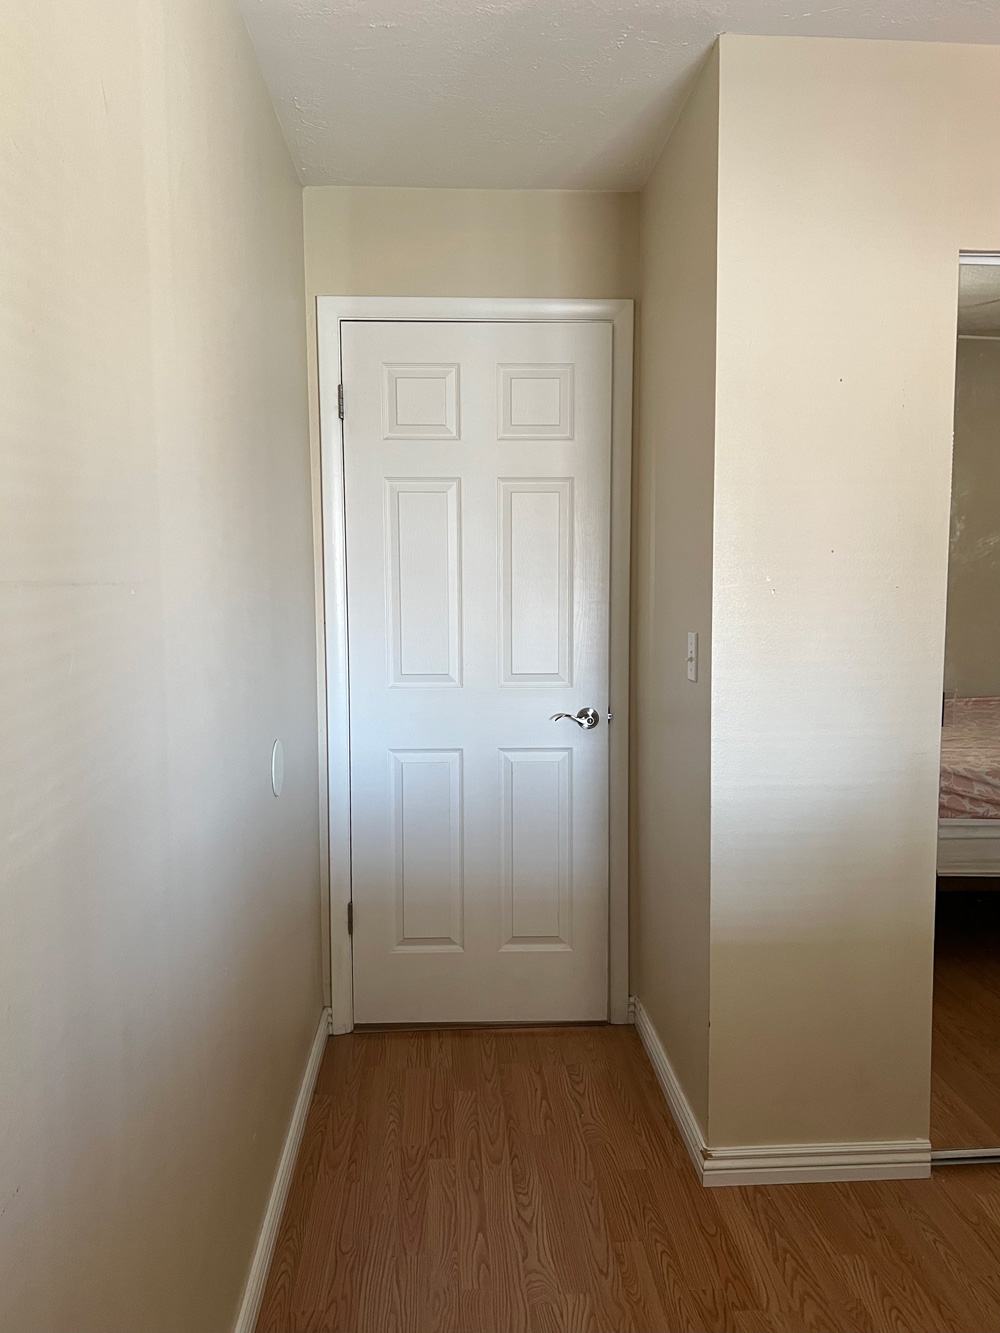 A white door in a beige room.